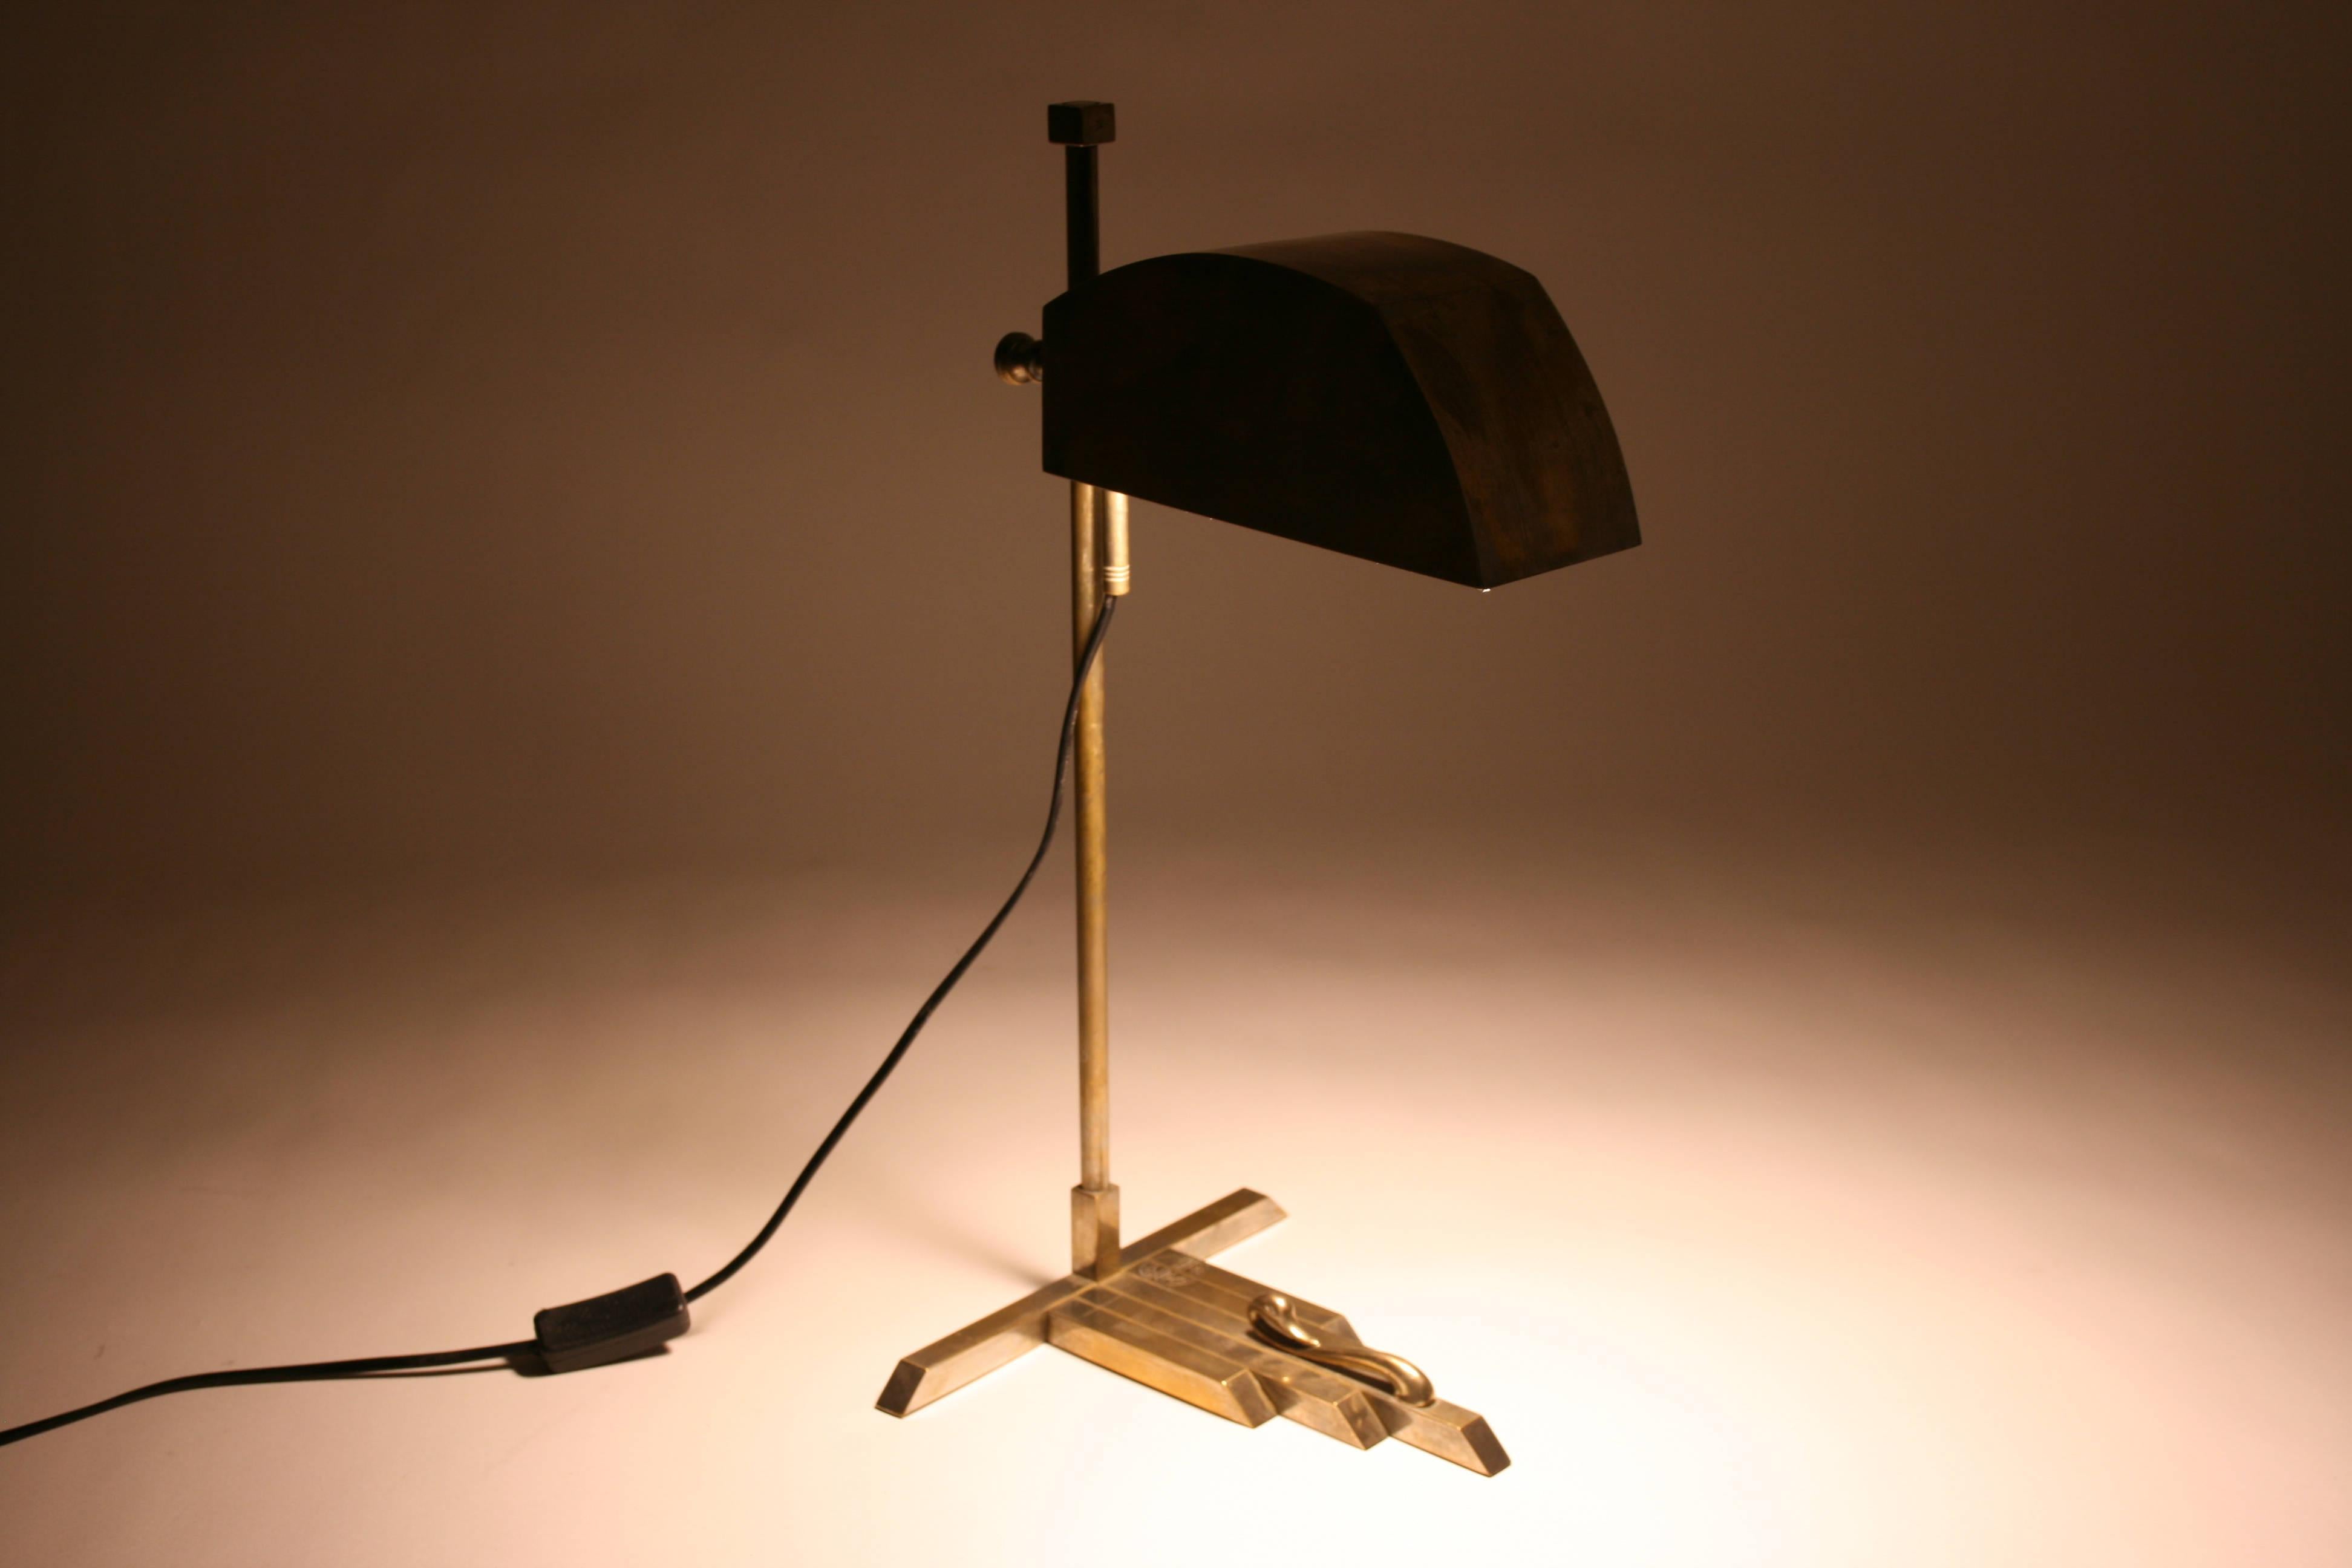 Tablelamp Original Design by Marcel Breuer Art Deco Style Brass, Paris, 1925 For Sale 4